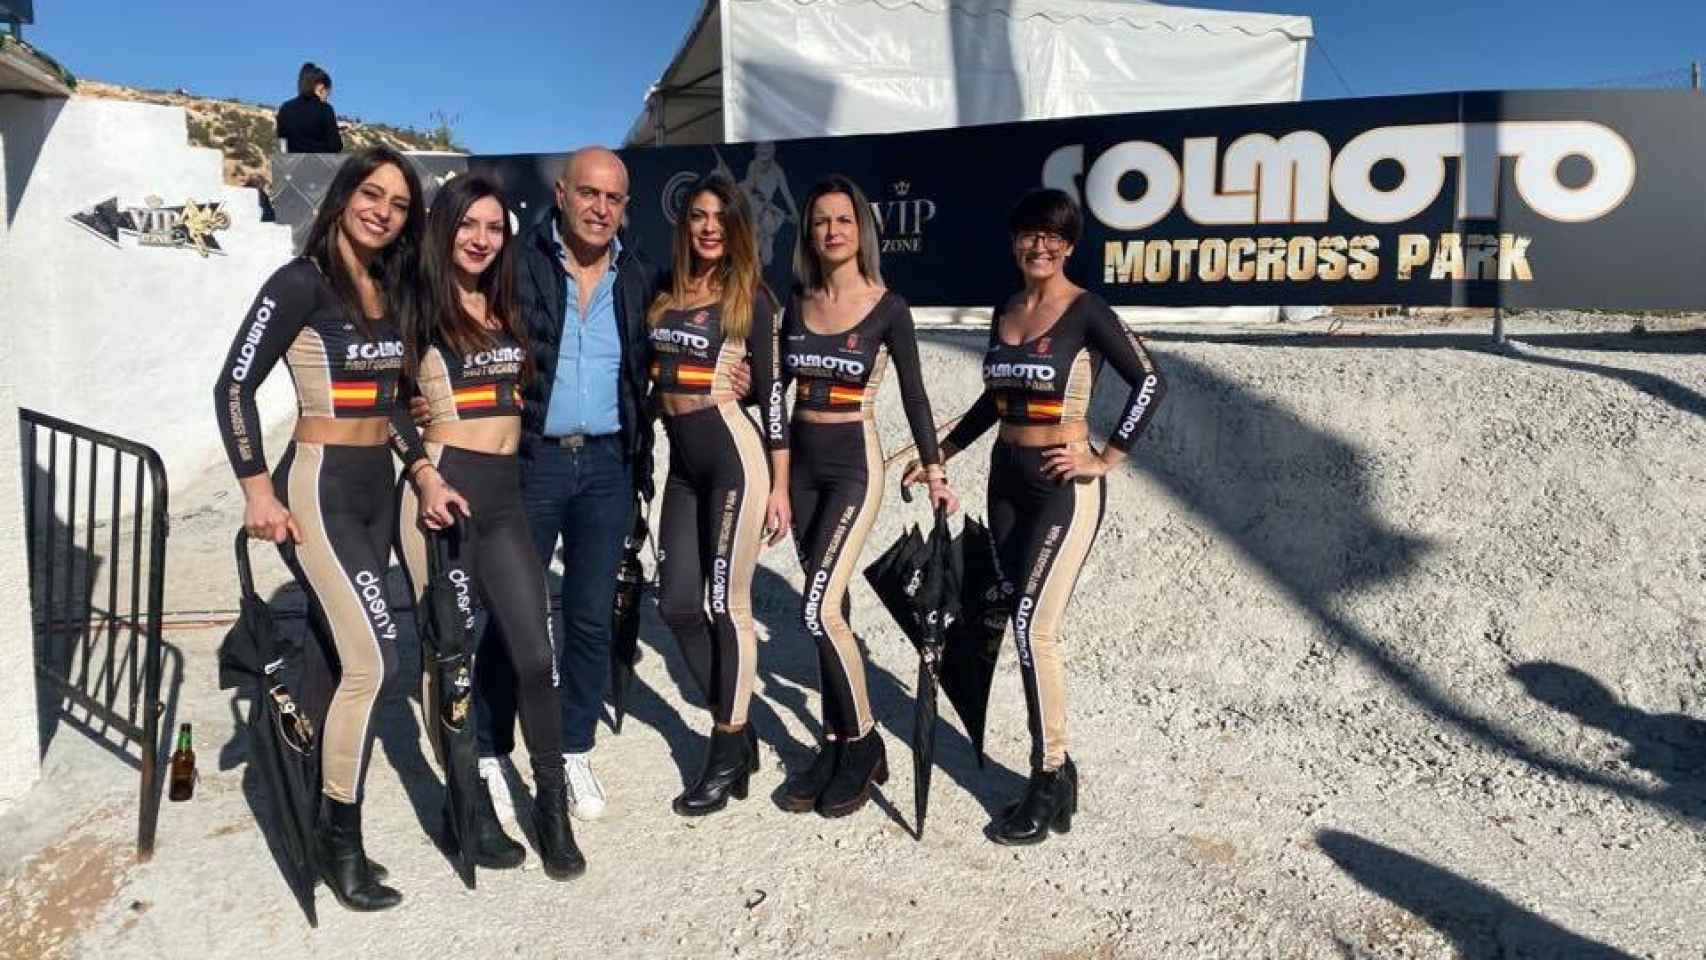 La 'celebritie' televisiva Kiko Matamoros posando con unas azafatas en el circuito de motocross que carece de licencia de actividad.